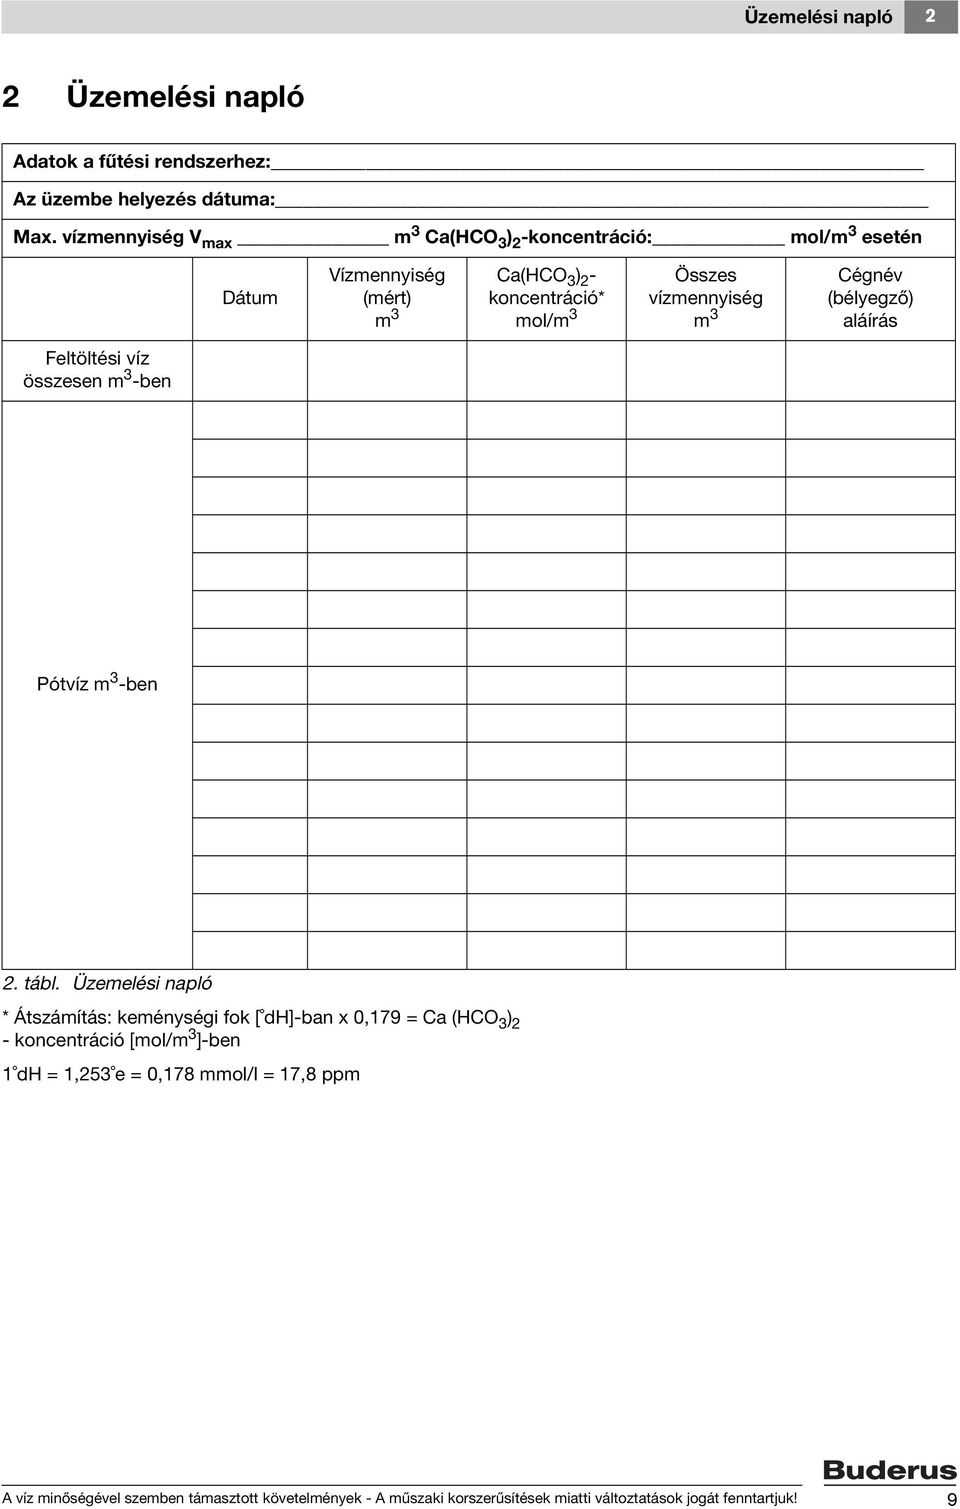 Vízminőség üzemelési napló - PDF Free Download